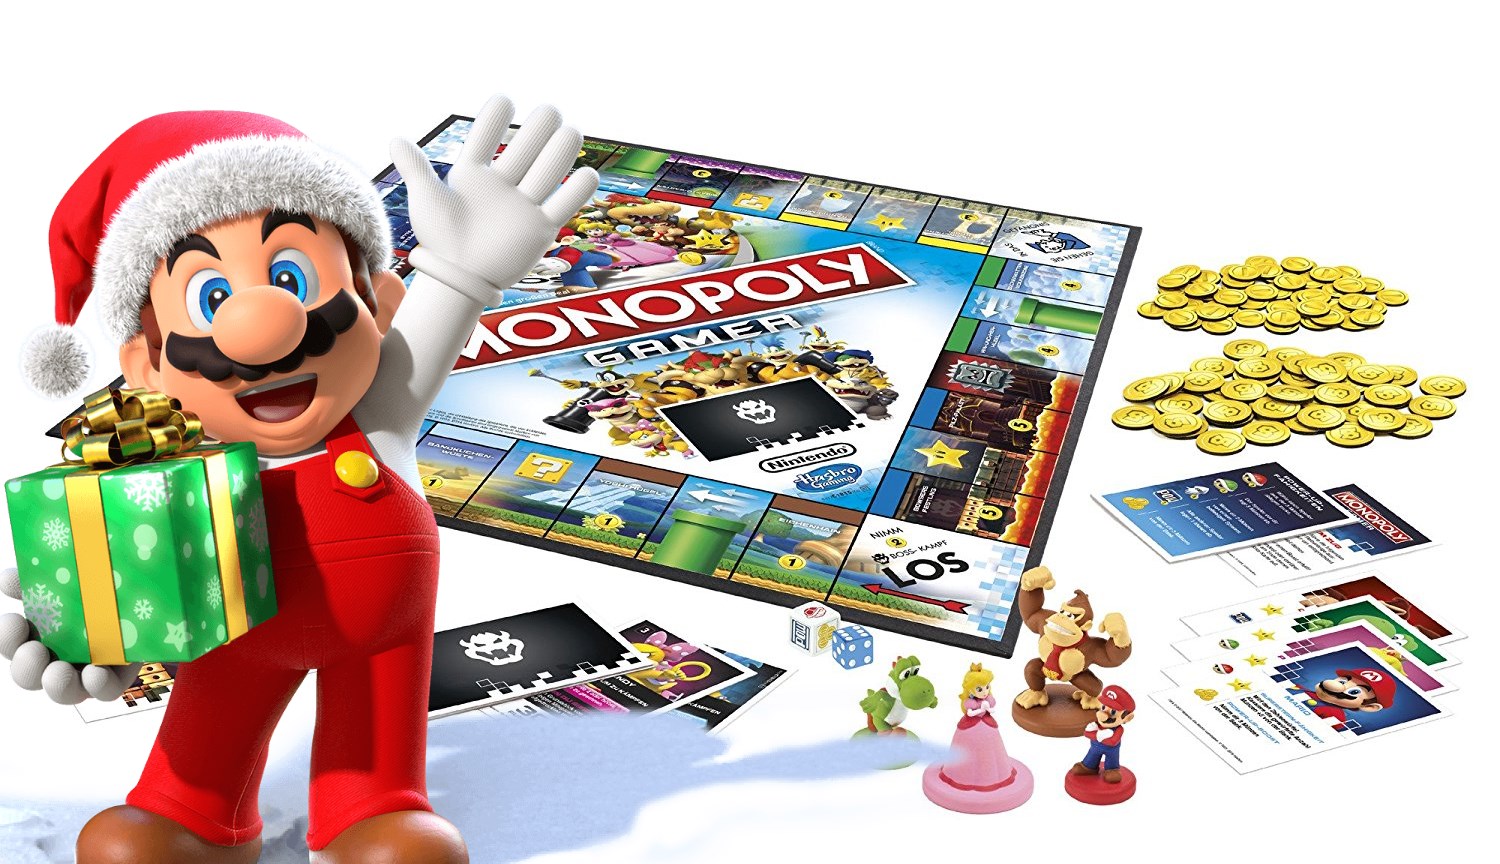 Dieses Monopoly ist ein gutes Weihnachtsgeschenk für einen Nintendo-Fan